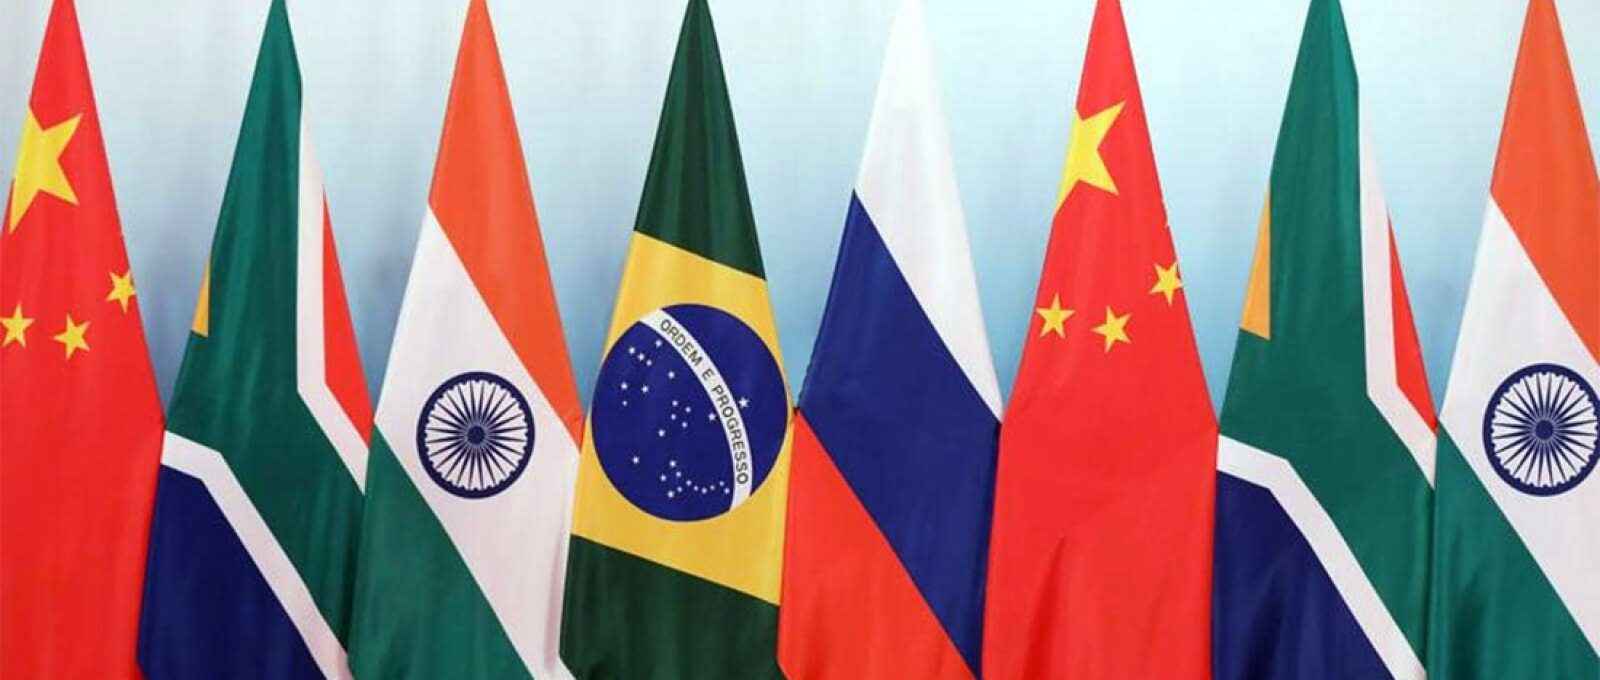 Por vídeo, o líder chinês, Xi Jinping disse que os países do BRICS devem fortalecer a confiança política e a cooperação em matéria de segurança.